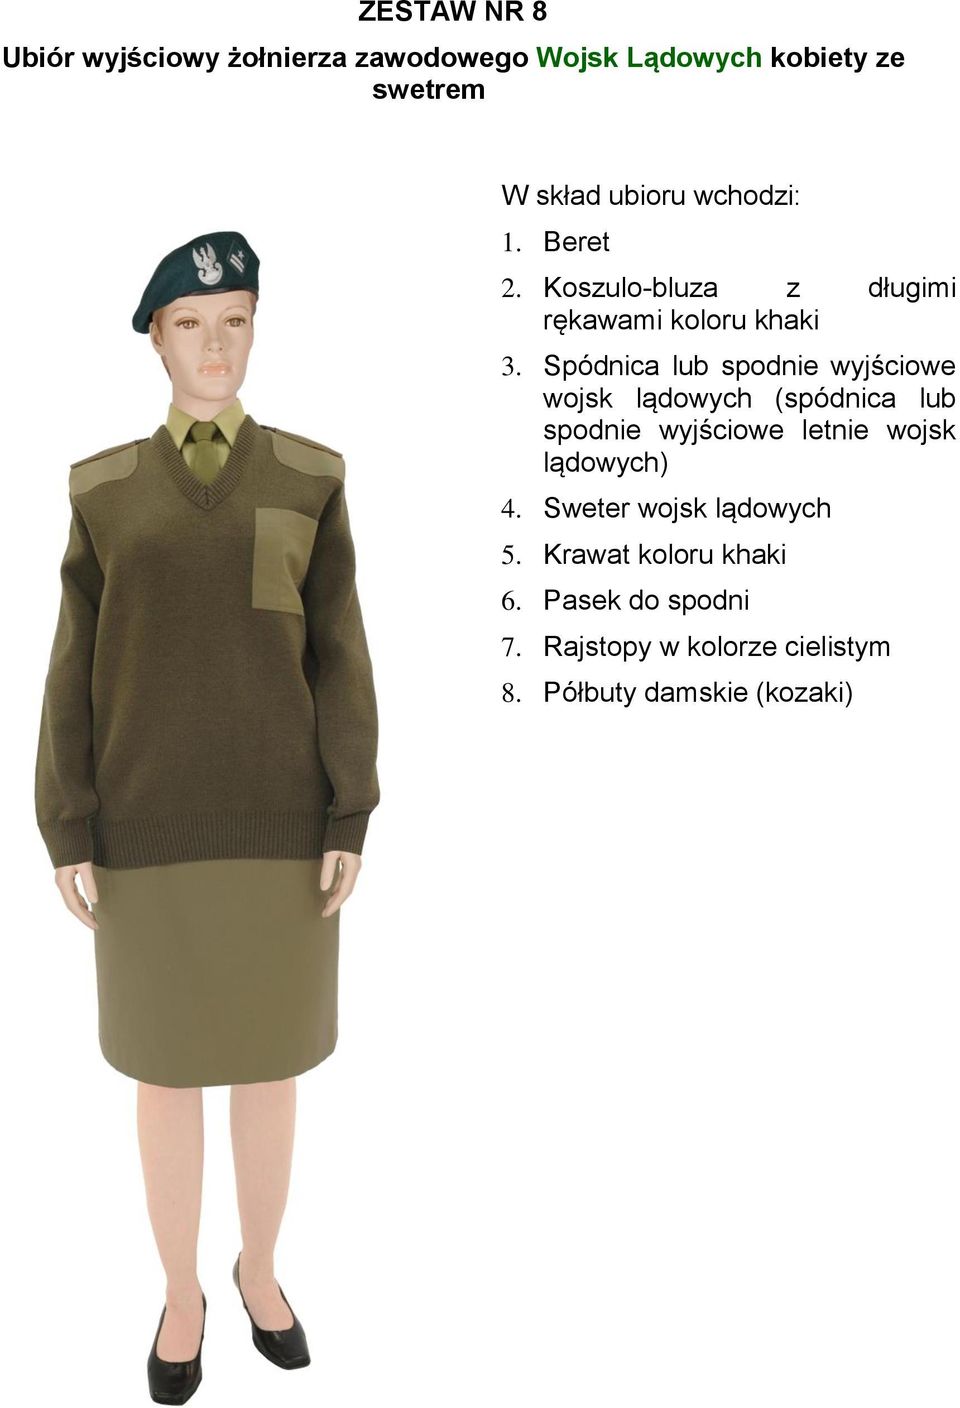 Spódnica lub spodnie wyjściowe wojsk lądowych (spódnica lub spodnie wyjściowe letnie